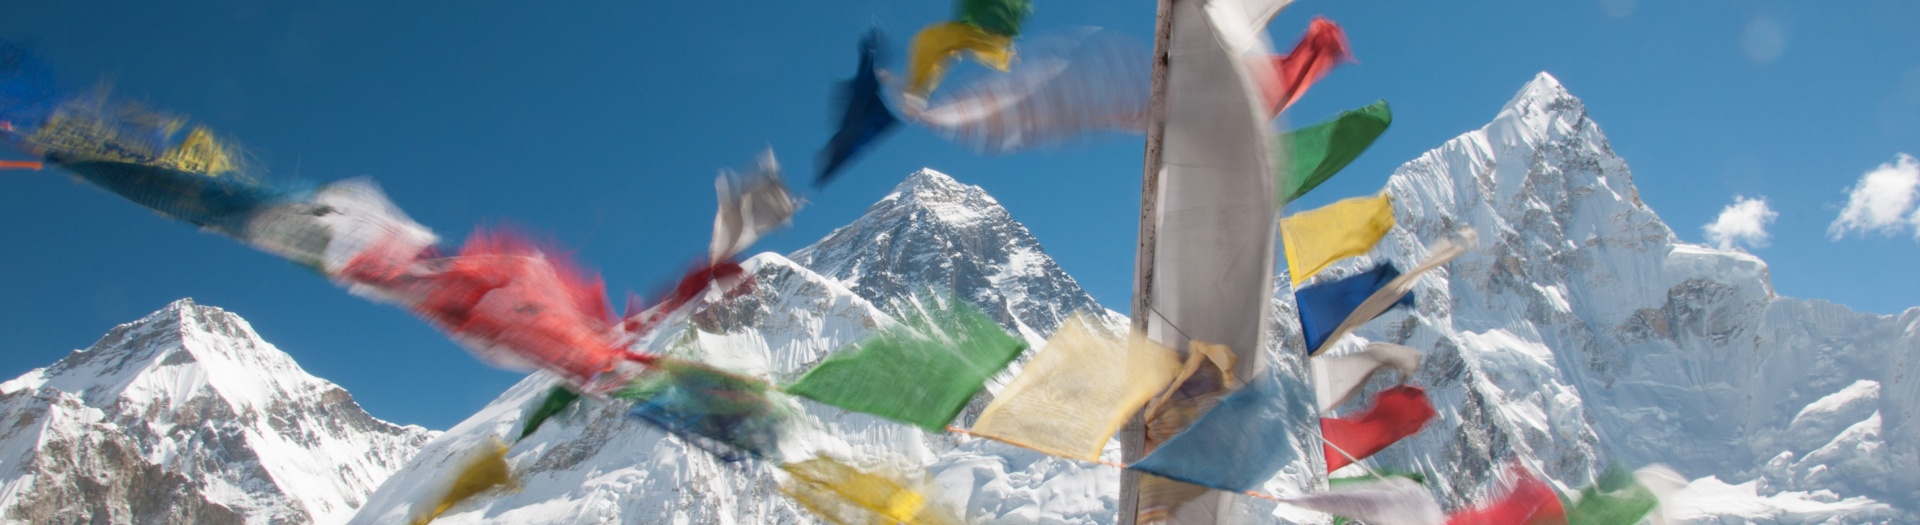 Voyages et treks dans la région de l'Everest